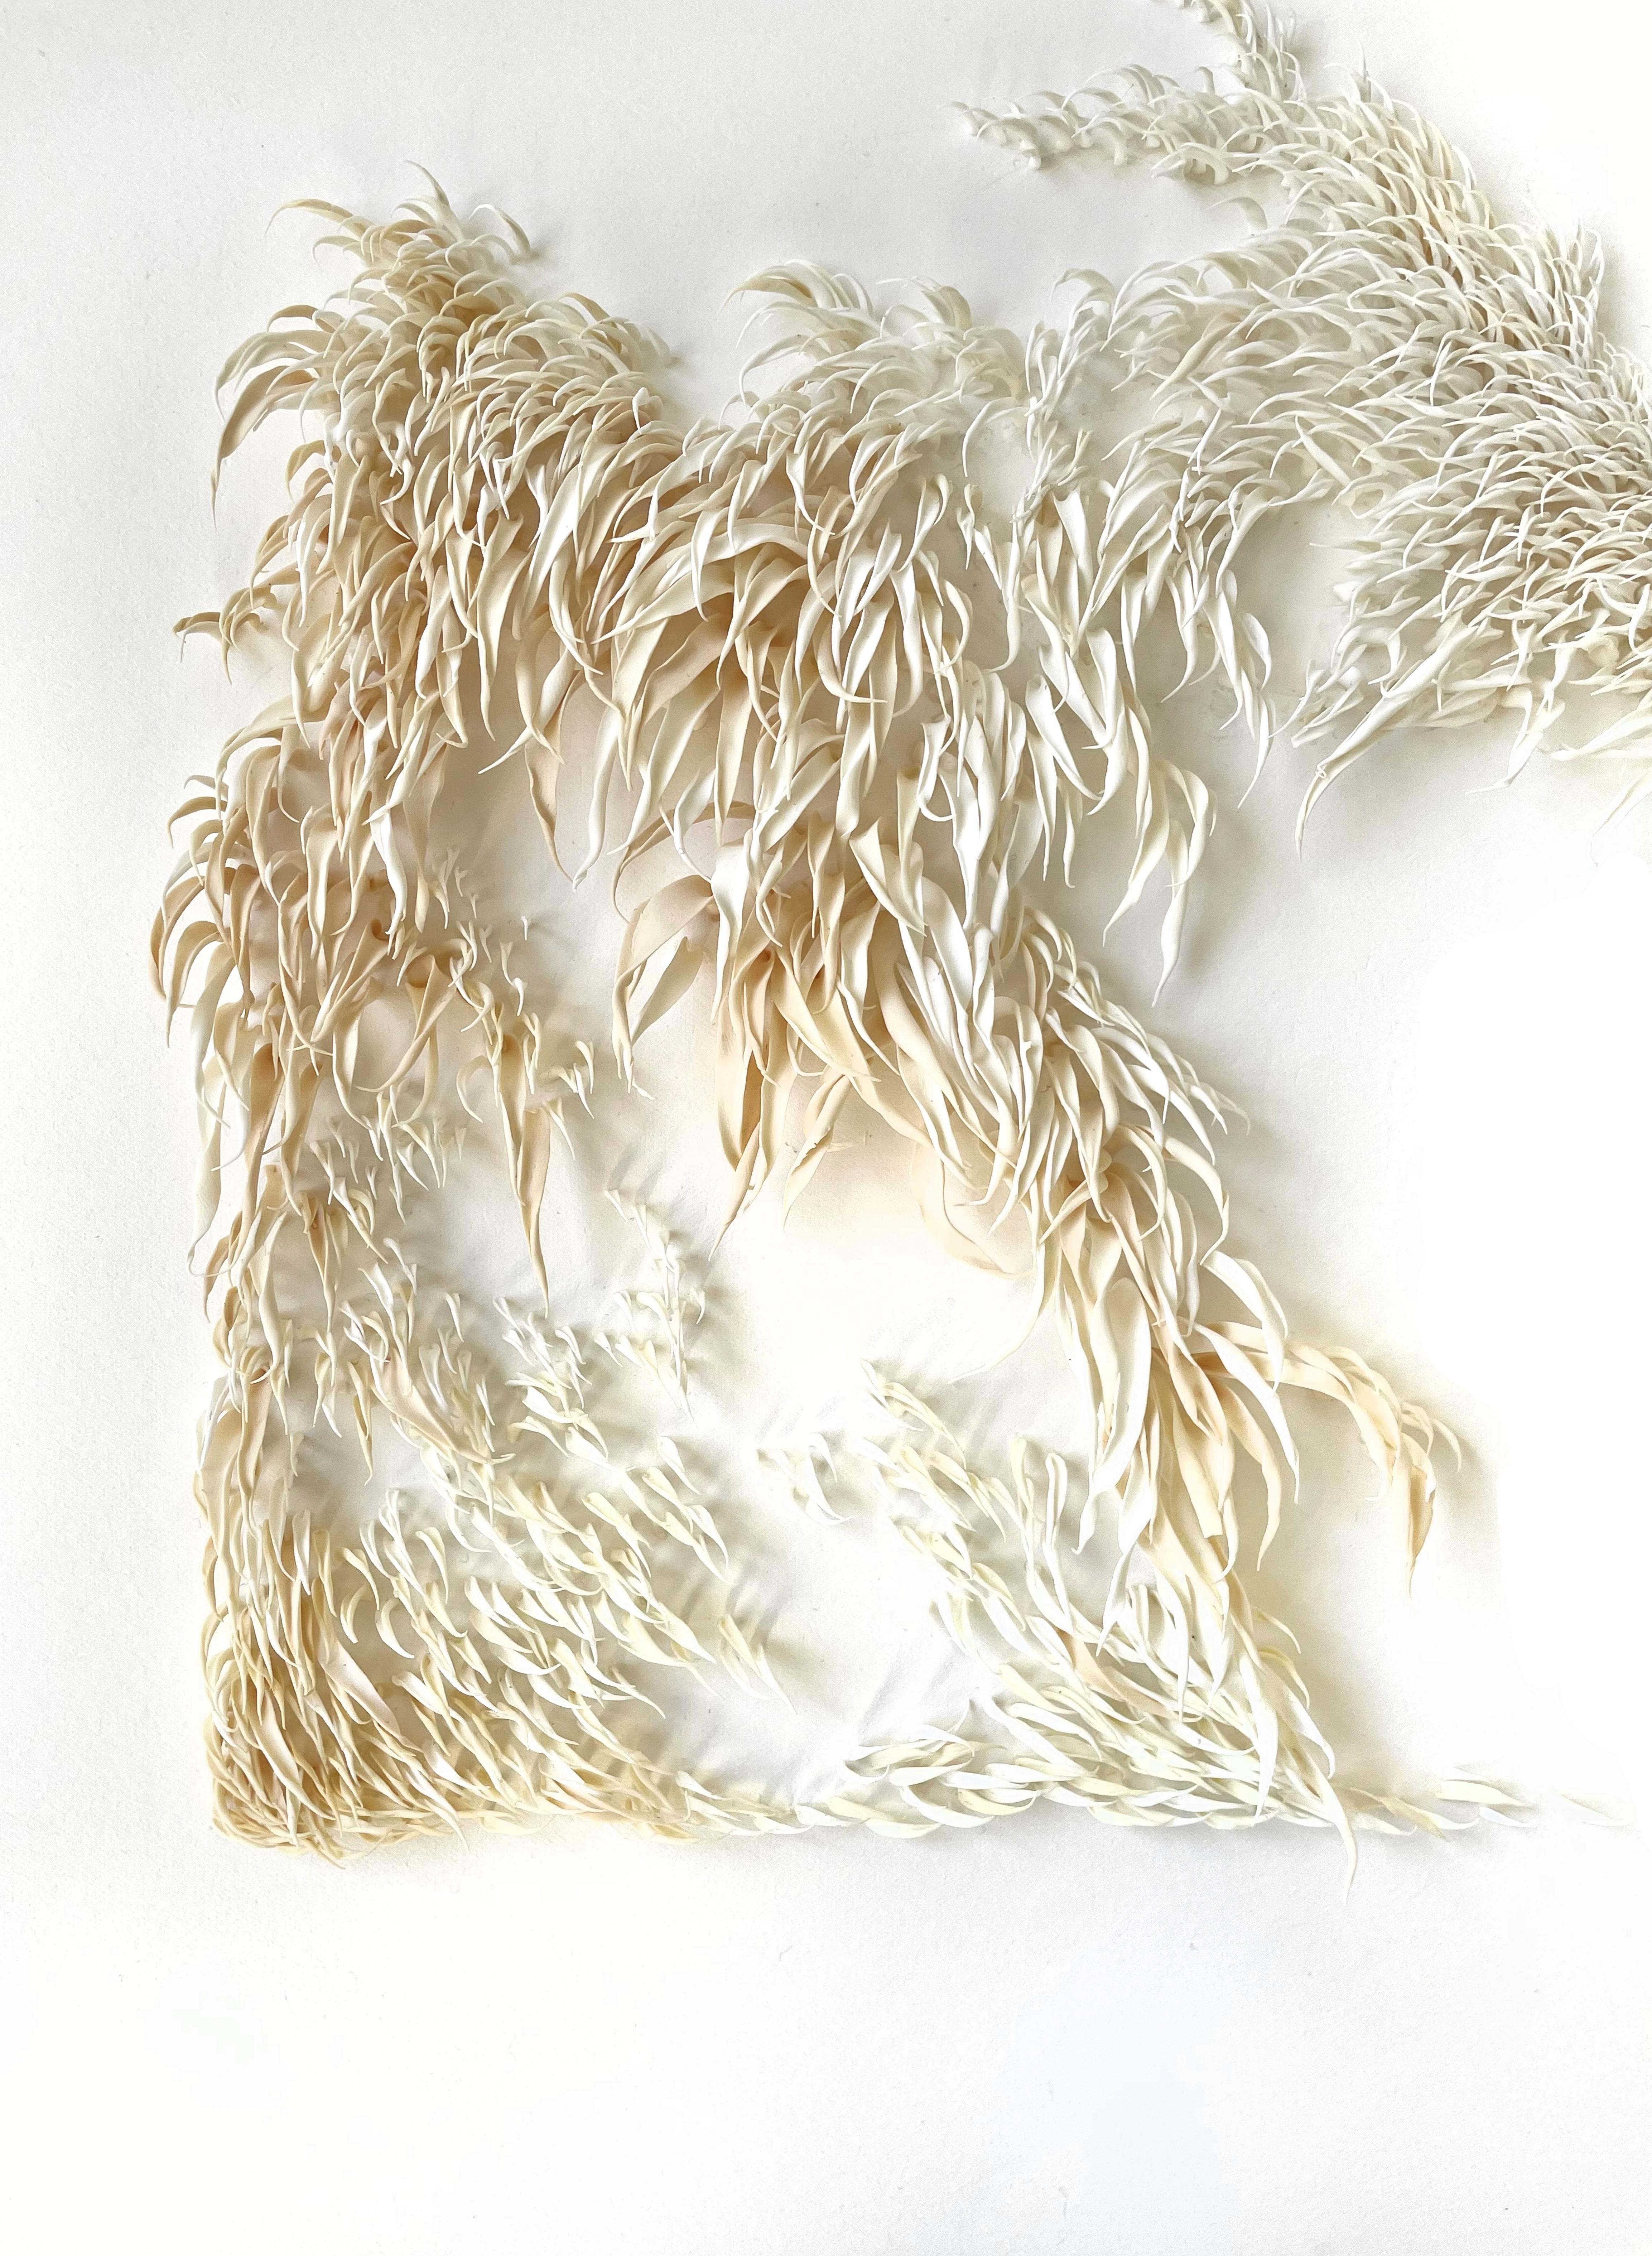 Gentle Current - abstrakte, von der Nature inspirierte weiße Minimal-Collage aus Ton auf Papier (Geometrische Abstraktion), Mixed Media Art, von Mylinh Ngyen